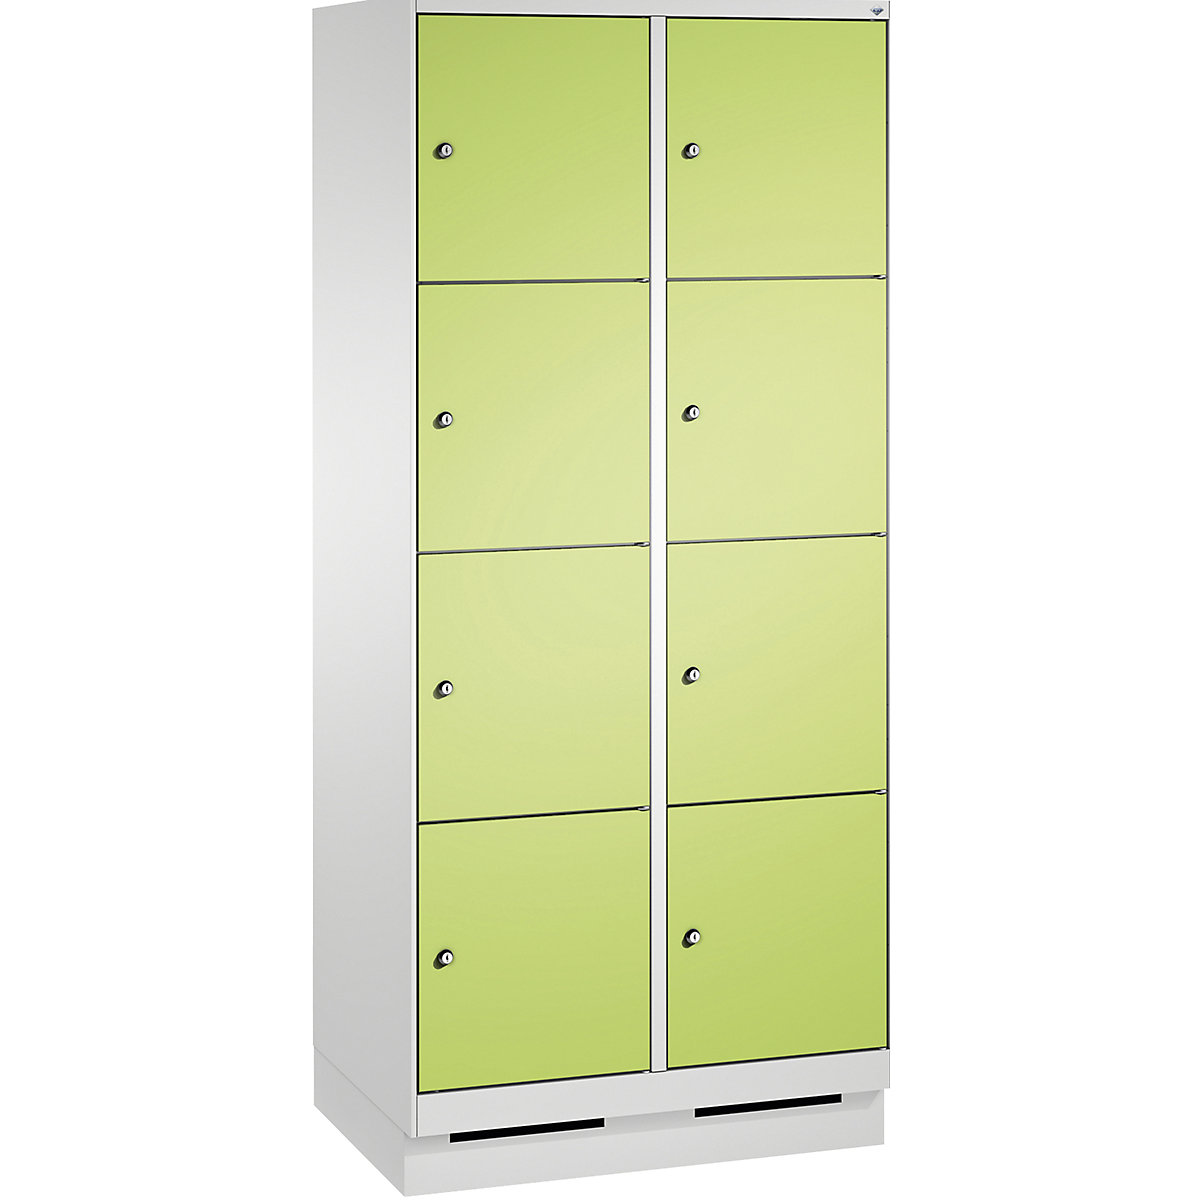 Armoire à casiers sur socle EVOLO – C+P, 2 compartiments, 4 casiers chacun, largeur compartiments 400 mm, gris clair / vert-12